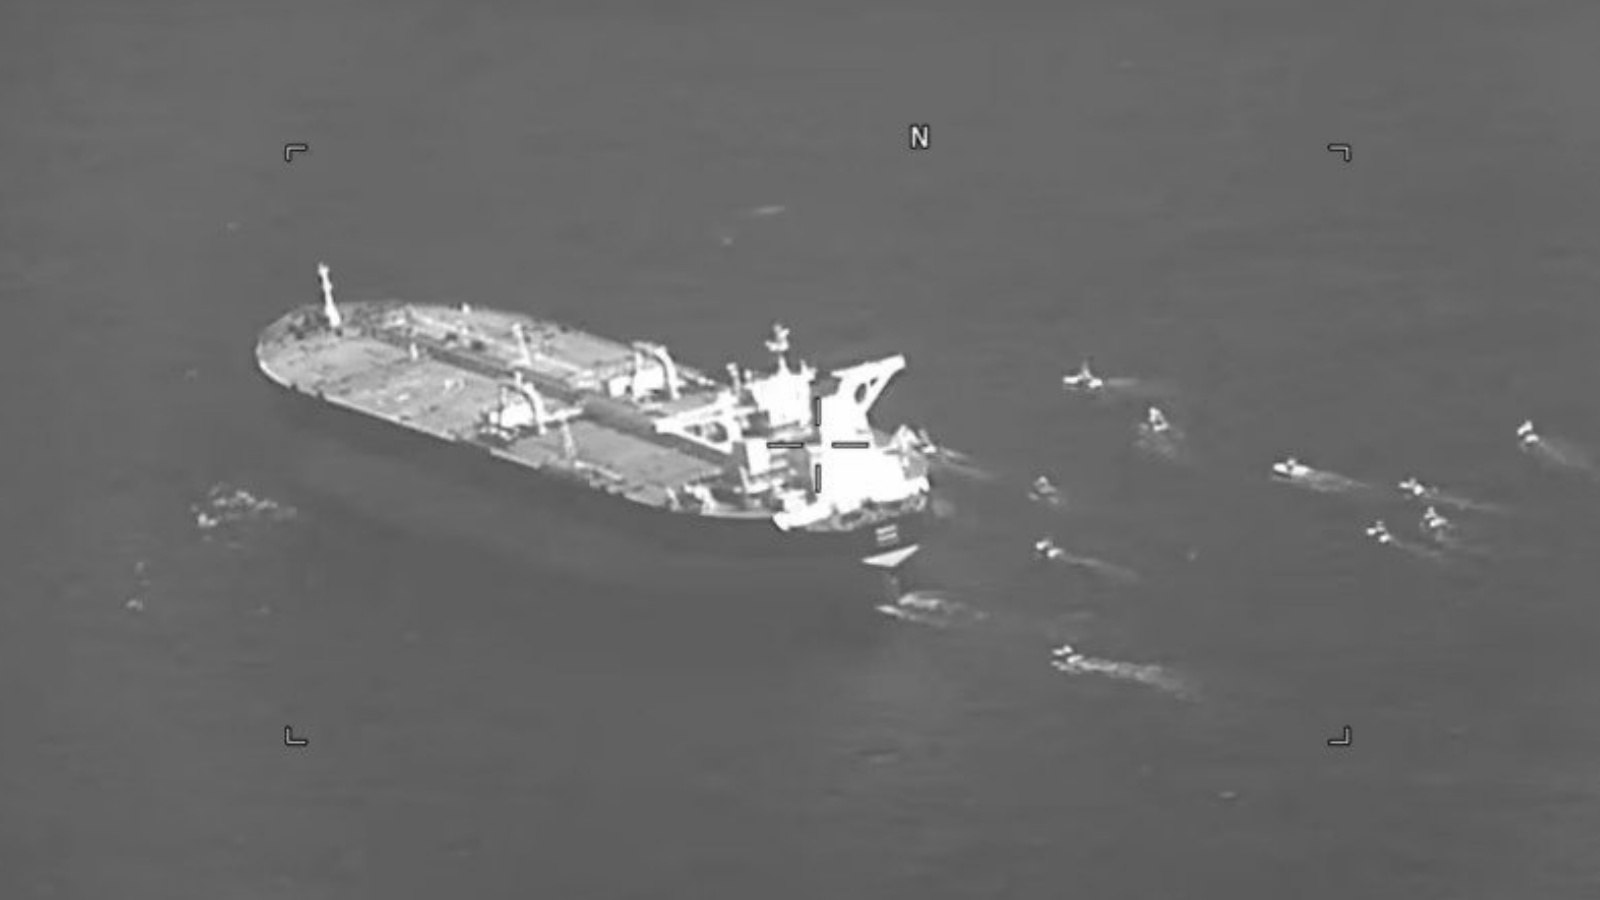 لقطة شاشة من نشرات البحرية الأمريكية لمقطع فيديو يُظهر مركبة هجوم سريع من ناقلة النفط التي ترفع علم بنما Niovi أثناء عبورها مضيق هرمز في 3 مايو.